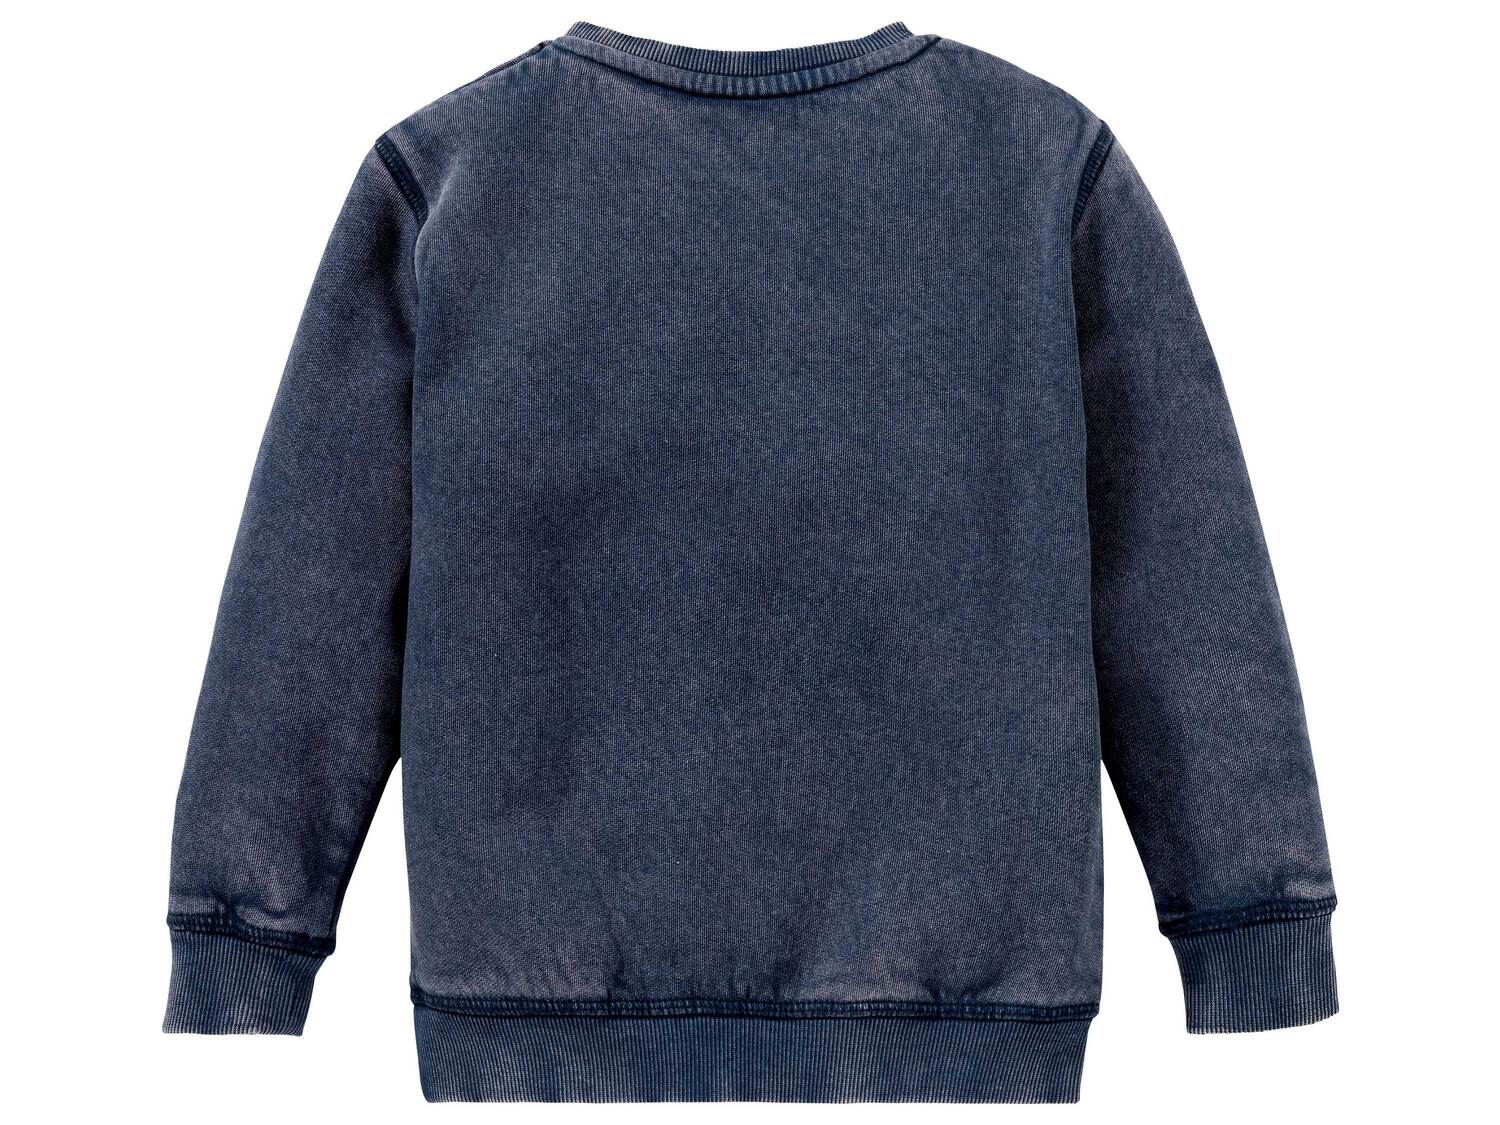 Bluza dresowa Lupilu, cena 19,99 PLN 
- rozmiary: 98-116
- wysoka zawartość bawełny
Dostępne ...